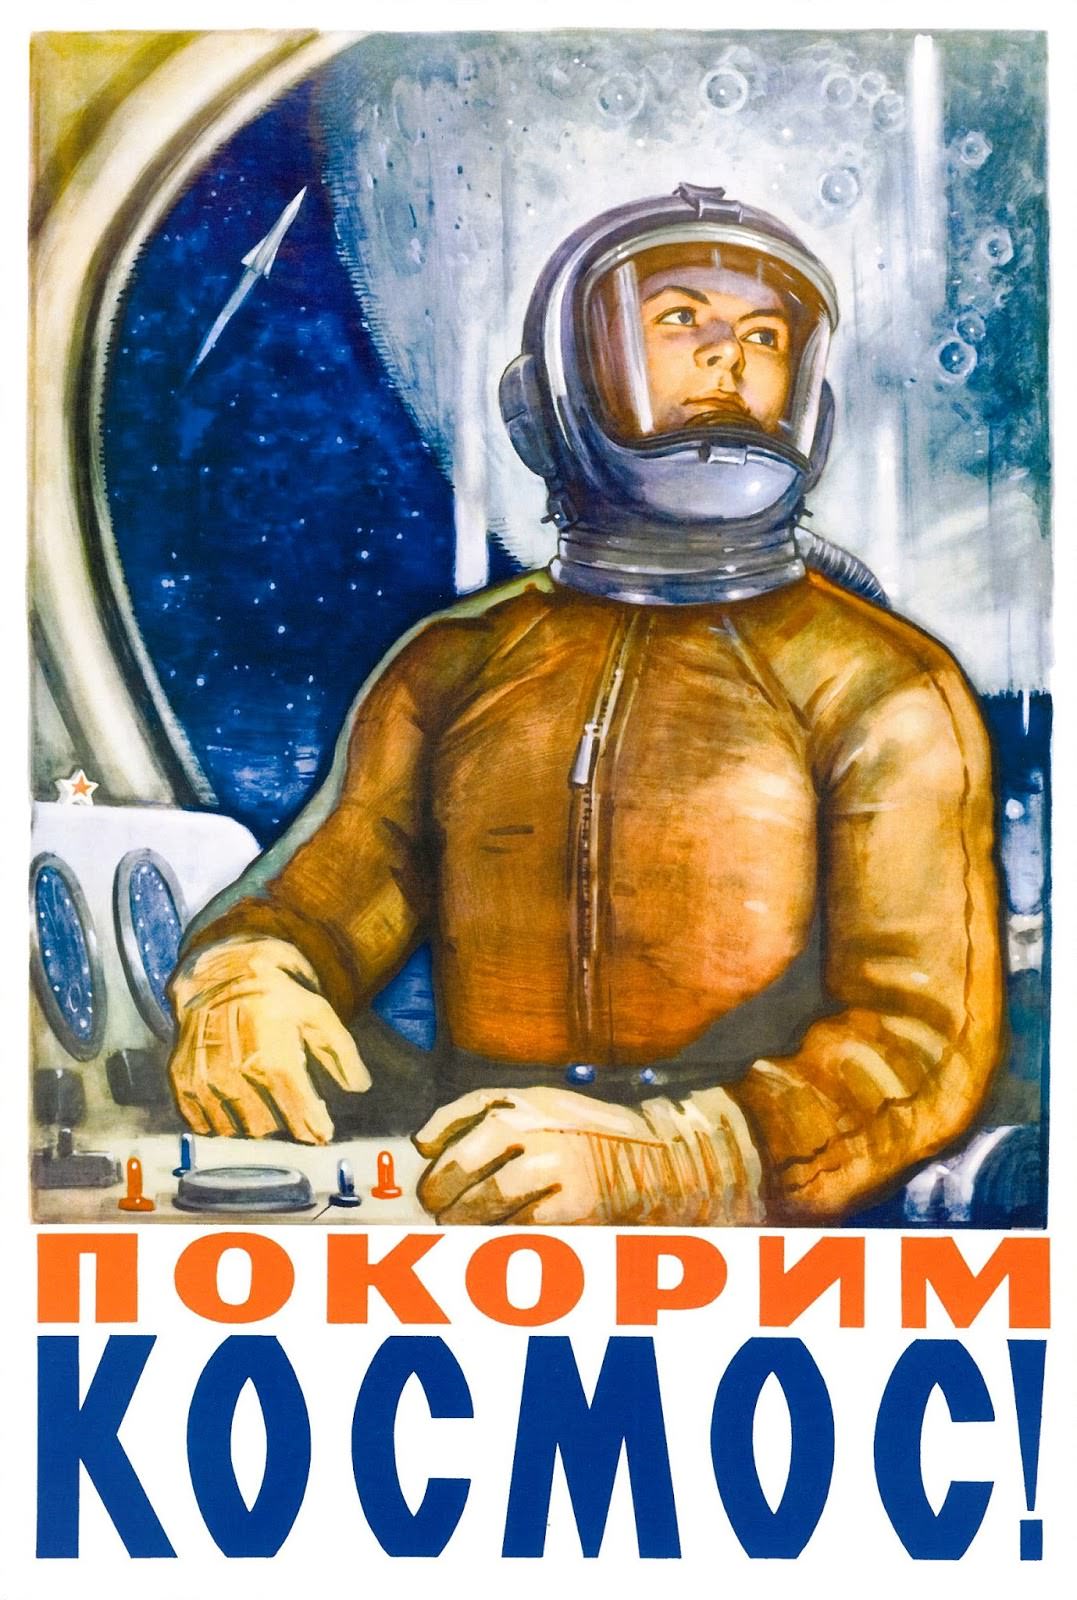 Golovanov. Let’s conquer Space 1960.